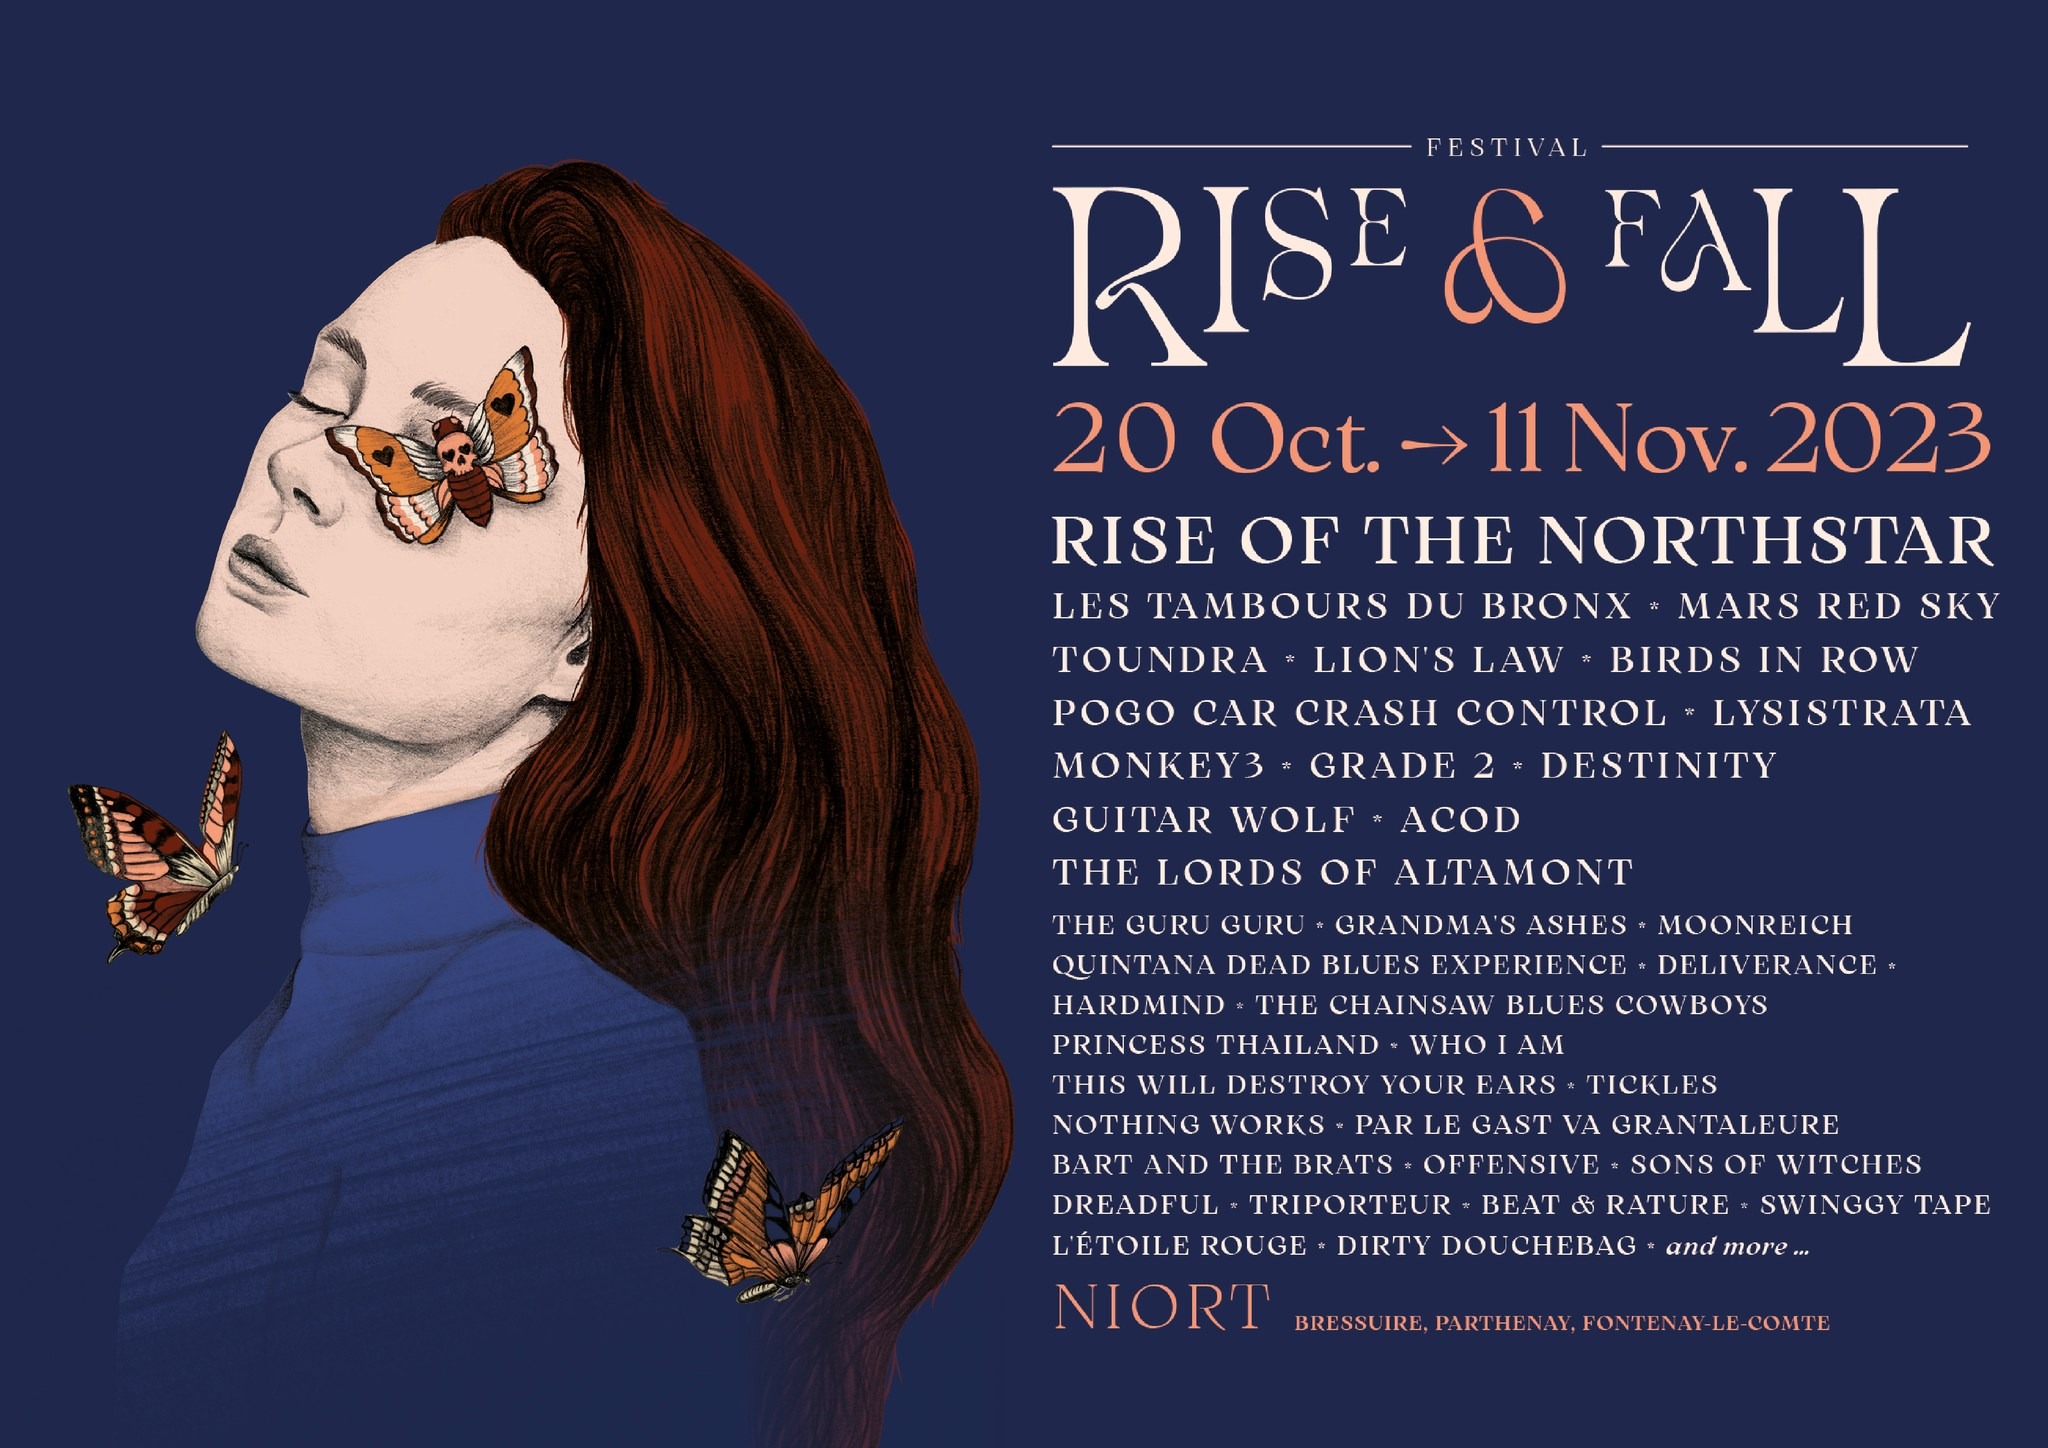 Rise and Fall Festival 6 Sortir à Niort